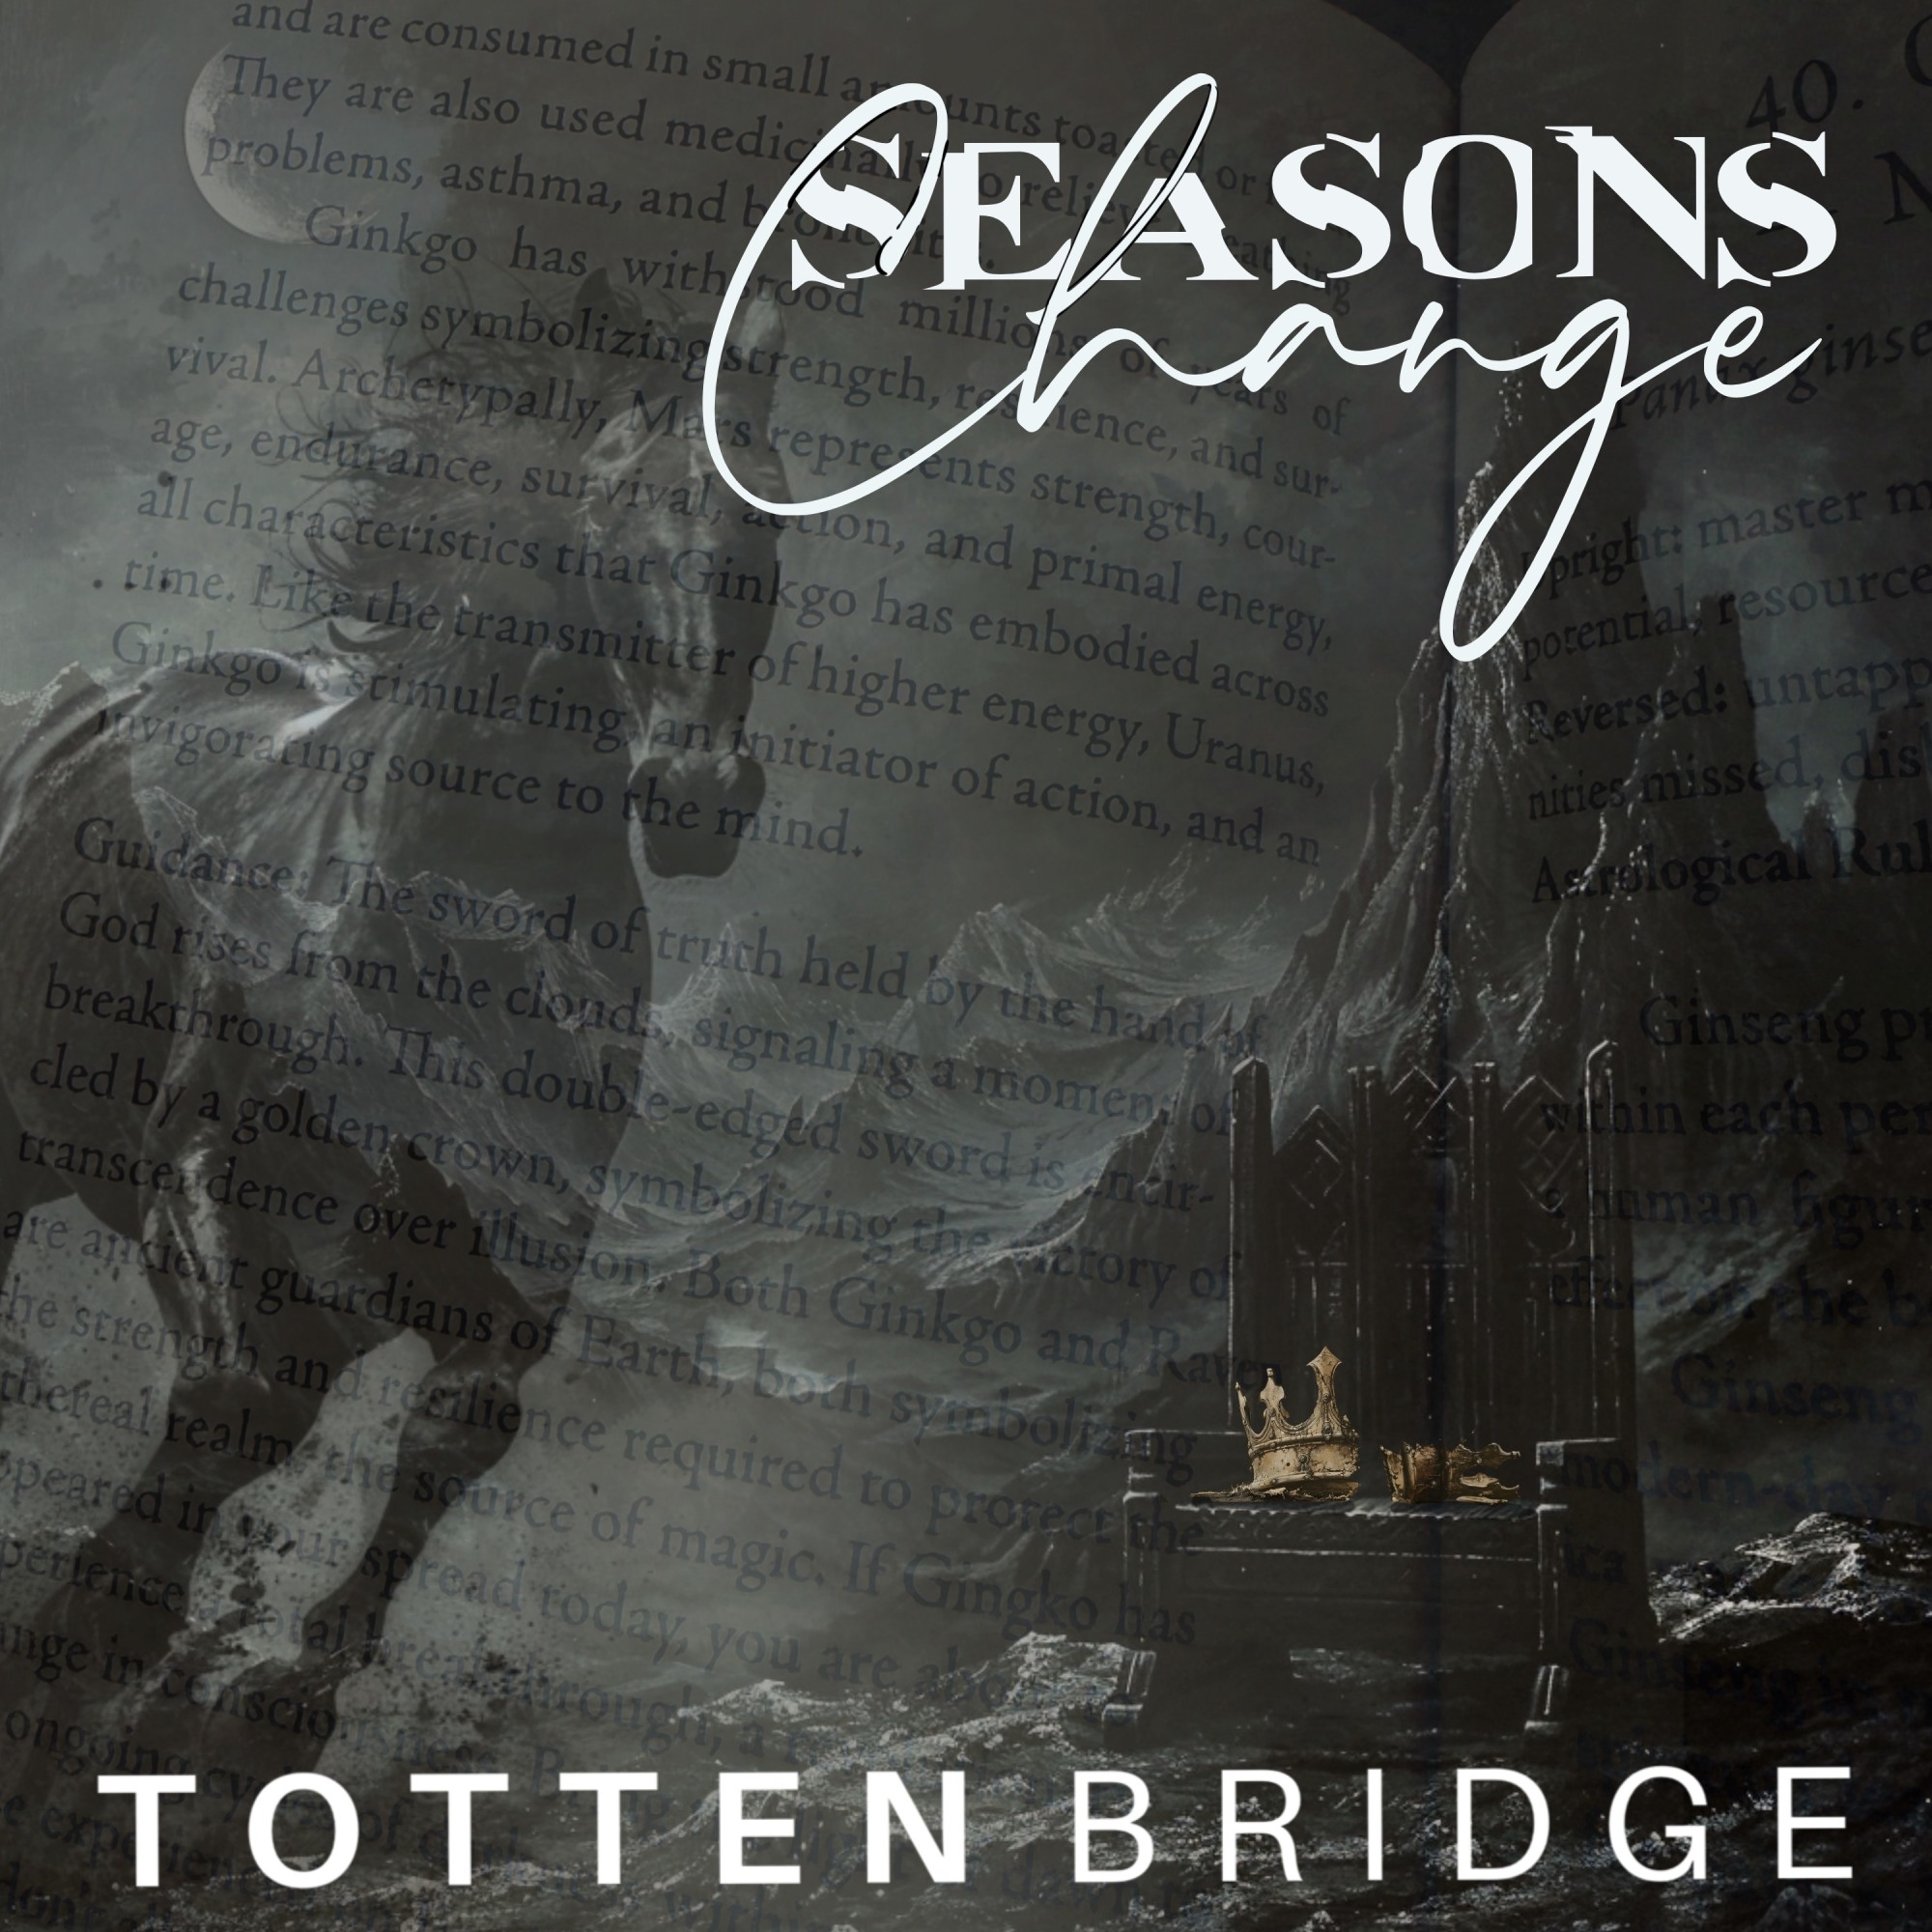 "Seasons Change" Cover art by Totten Bridge